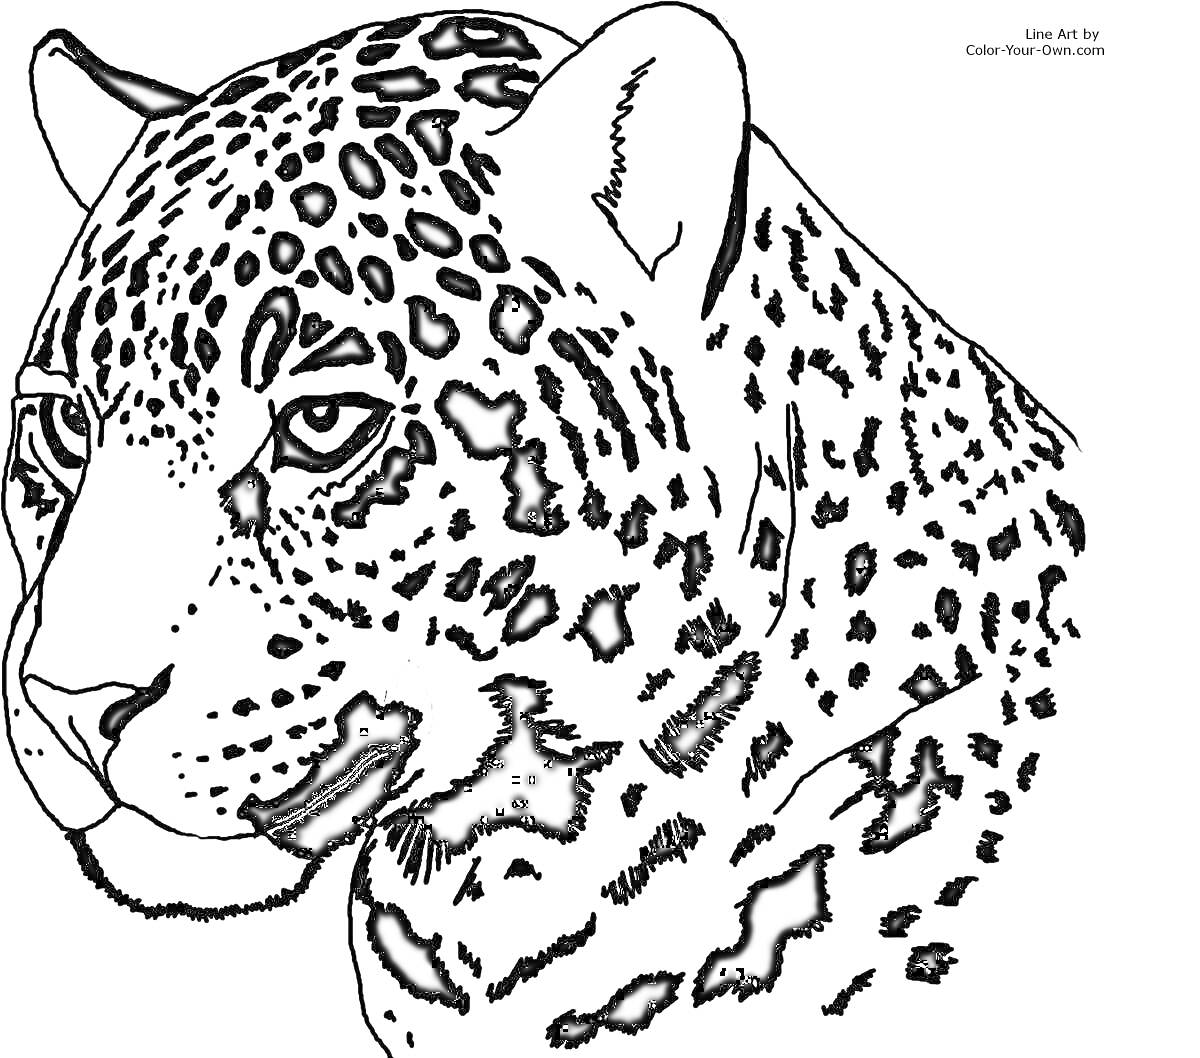 Ягуар крупным планом, взгляд влево, пятнышки на голове и шее, реалистичное изображение